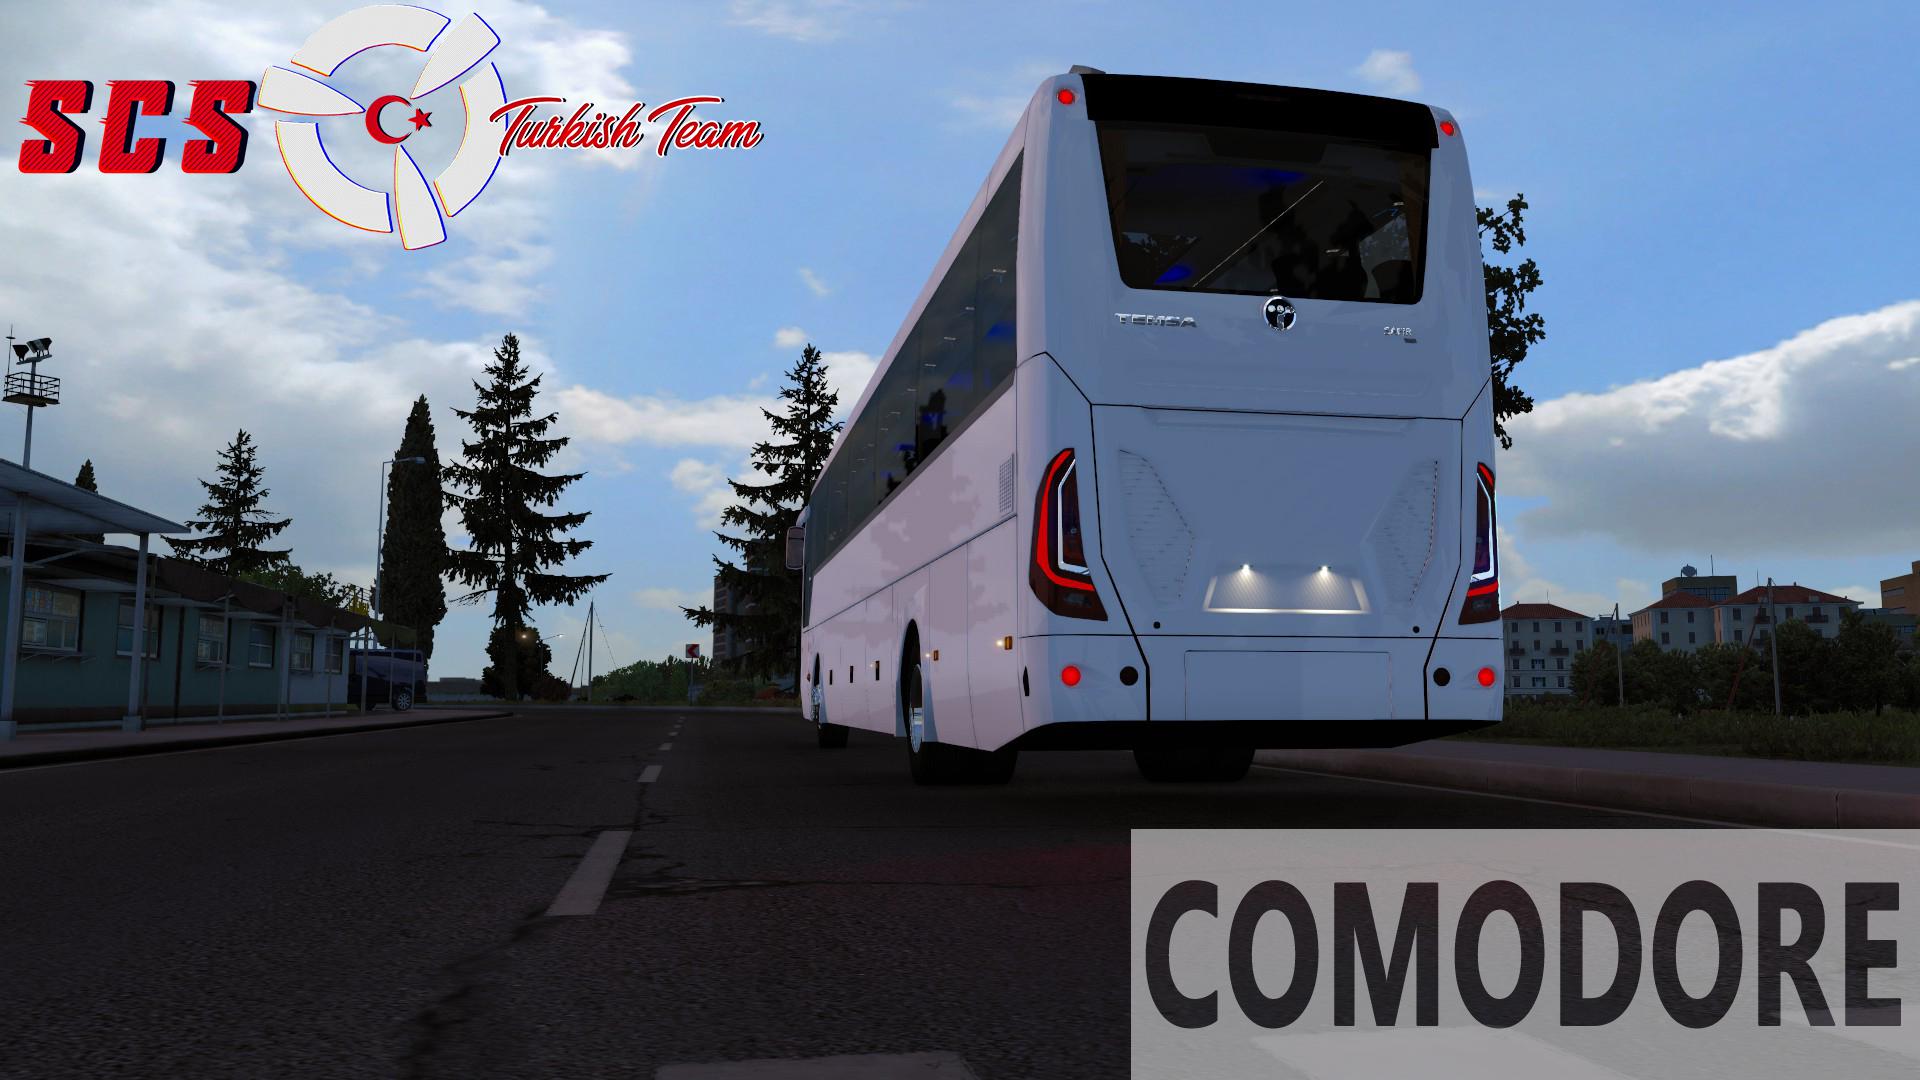 omsi bus simulator download